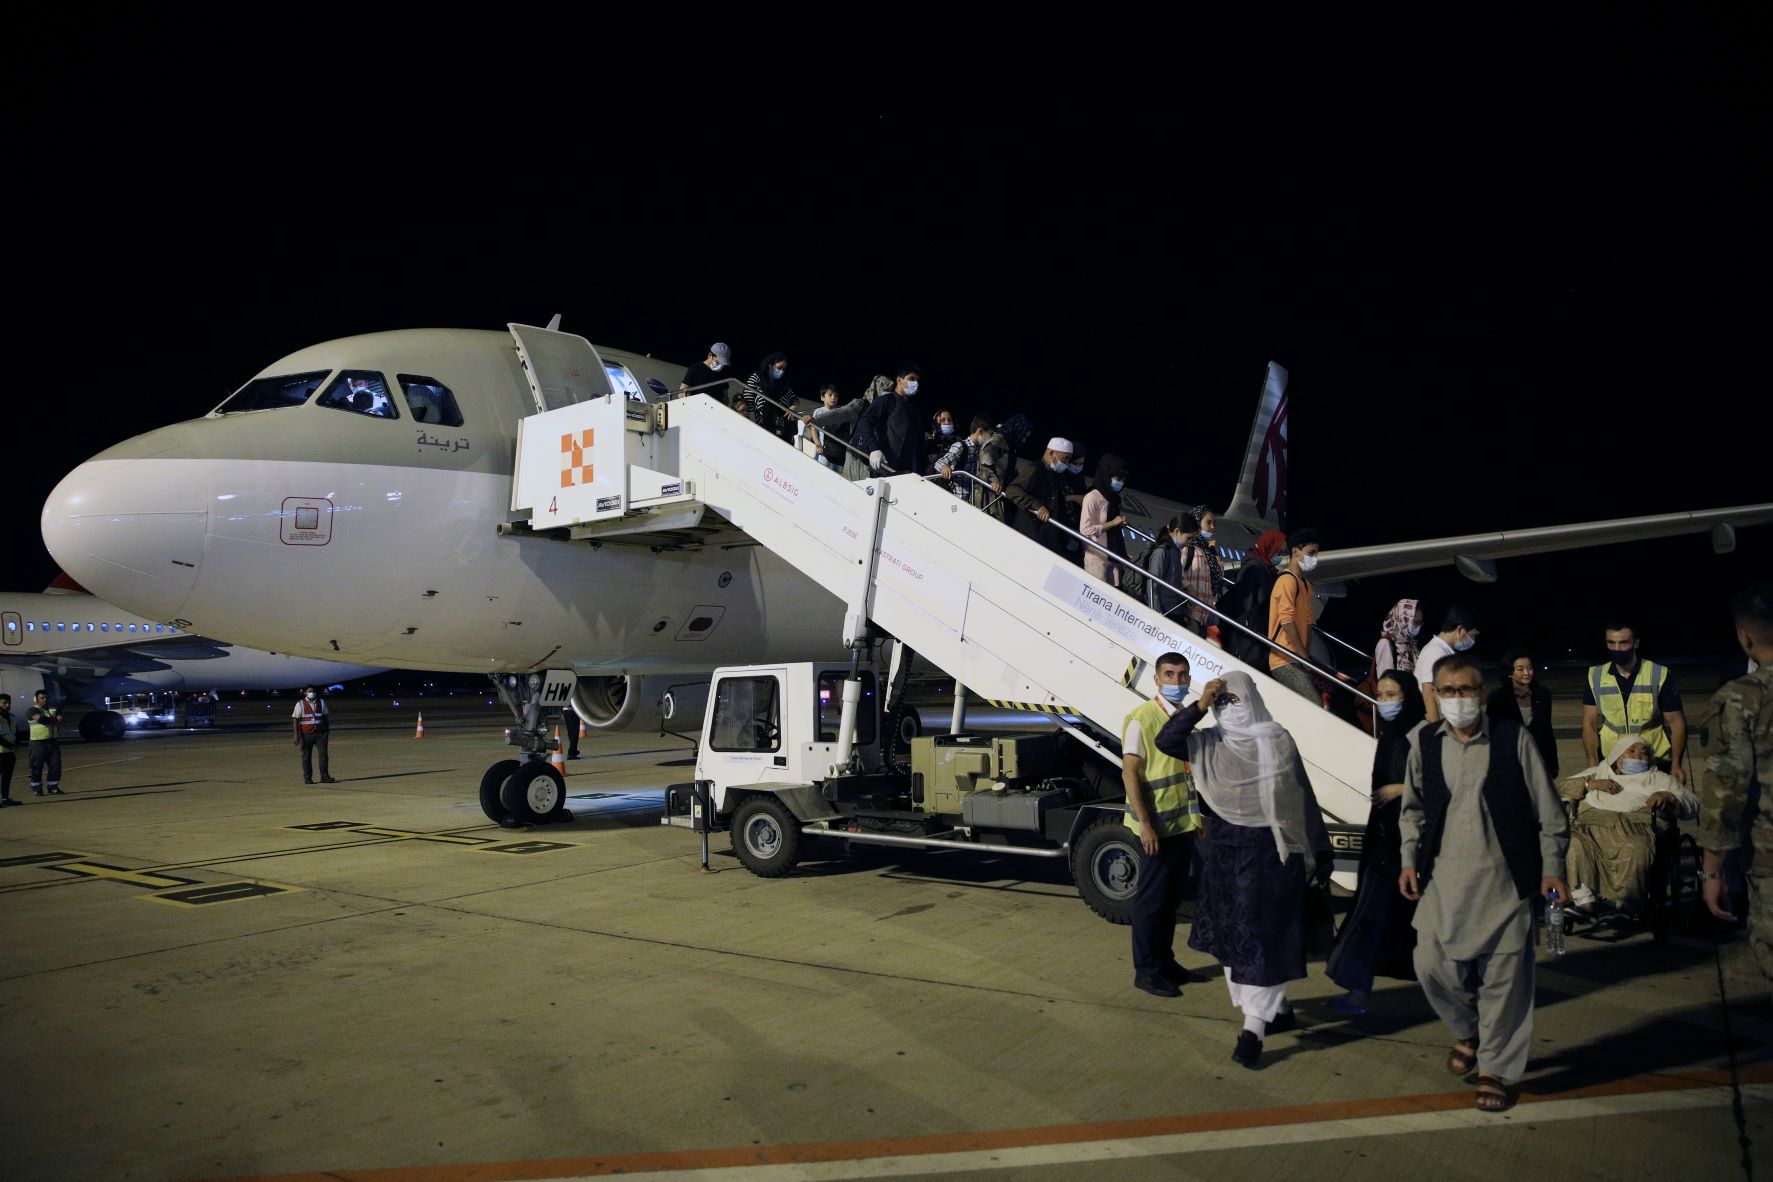 إخلاء جوي لدفعة ثالثة من مواطنين أفغان، أثناء وصول طائرتهم إلى مطار تيرانا في ألبانيا، بتاريخ 28 أغسطس 2021 